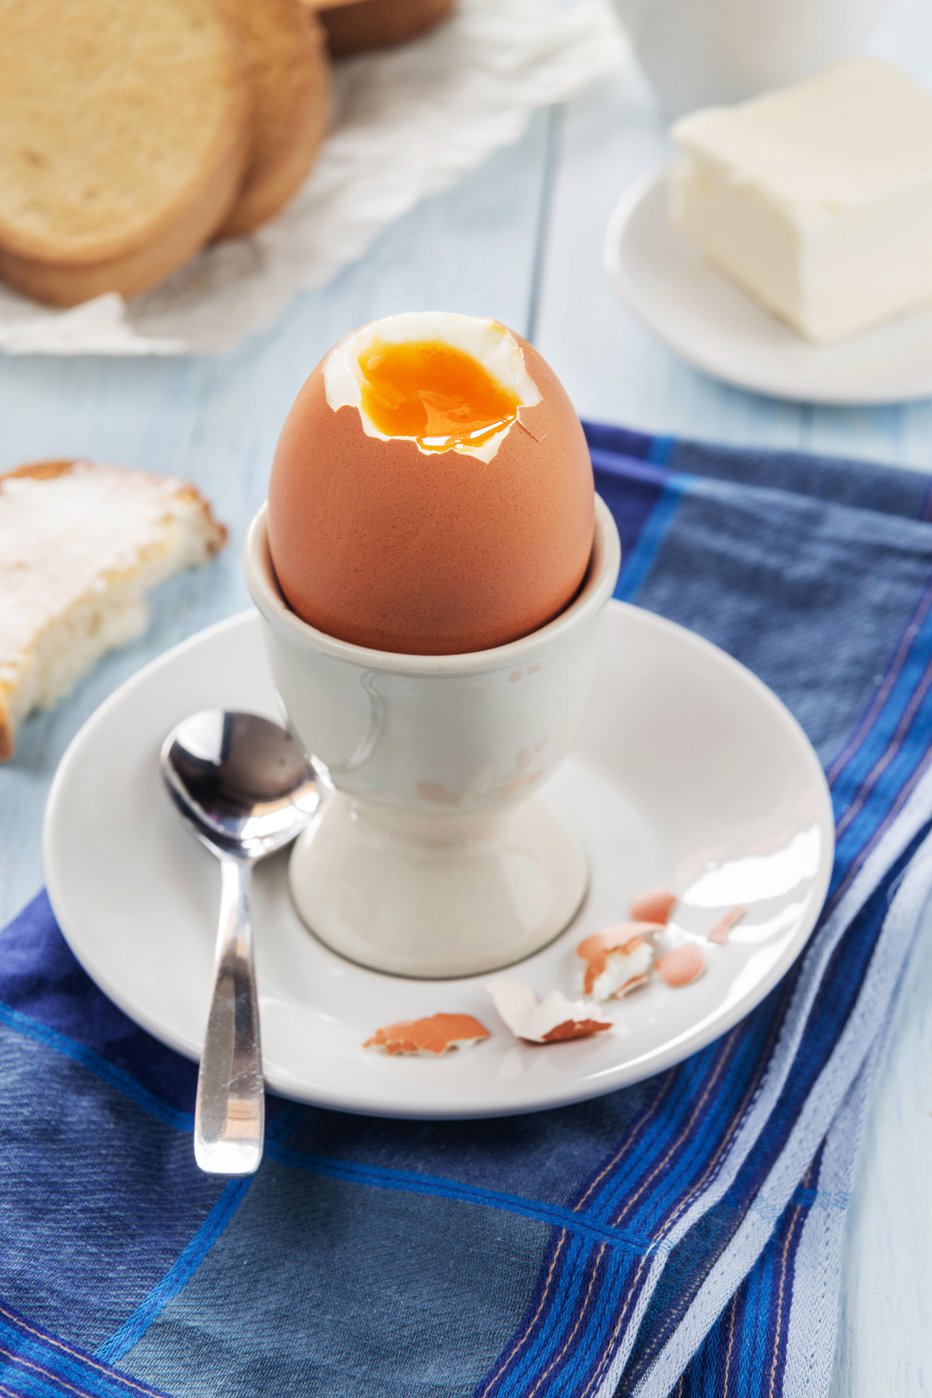 Fotografija: Mehko kuhano jajce je priljubljen zajtrk. FOTO: Guliver/Getty Images